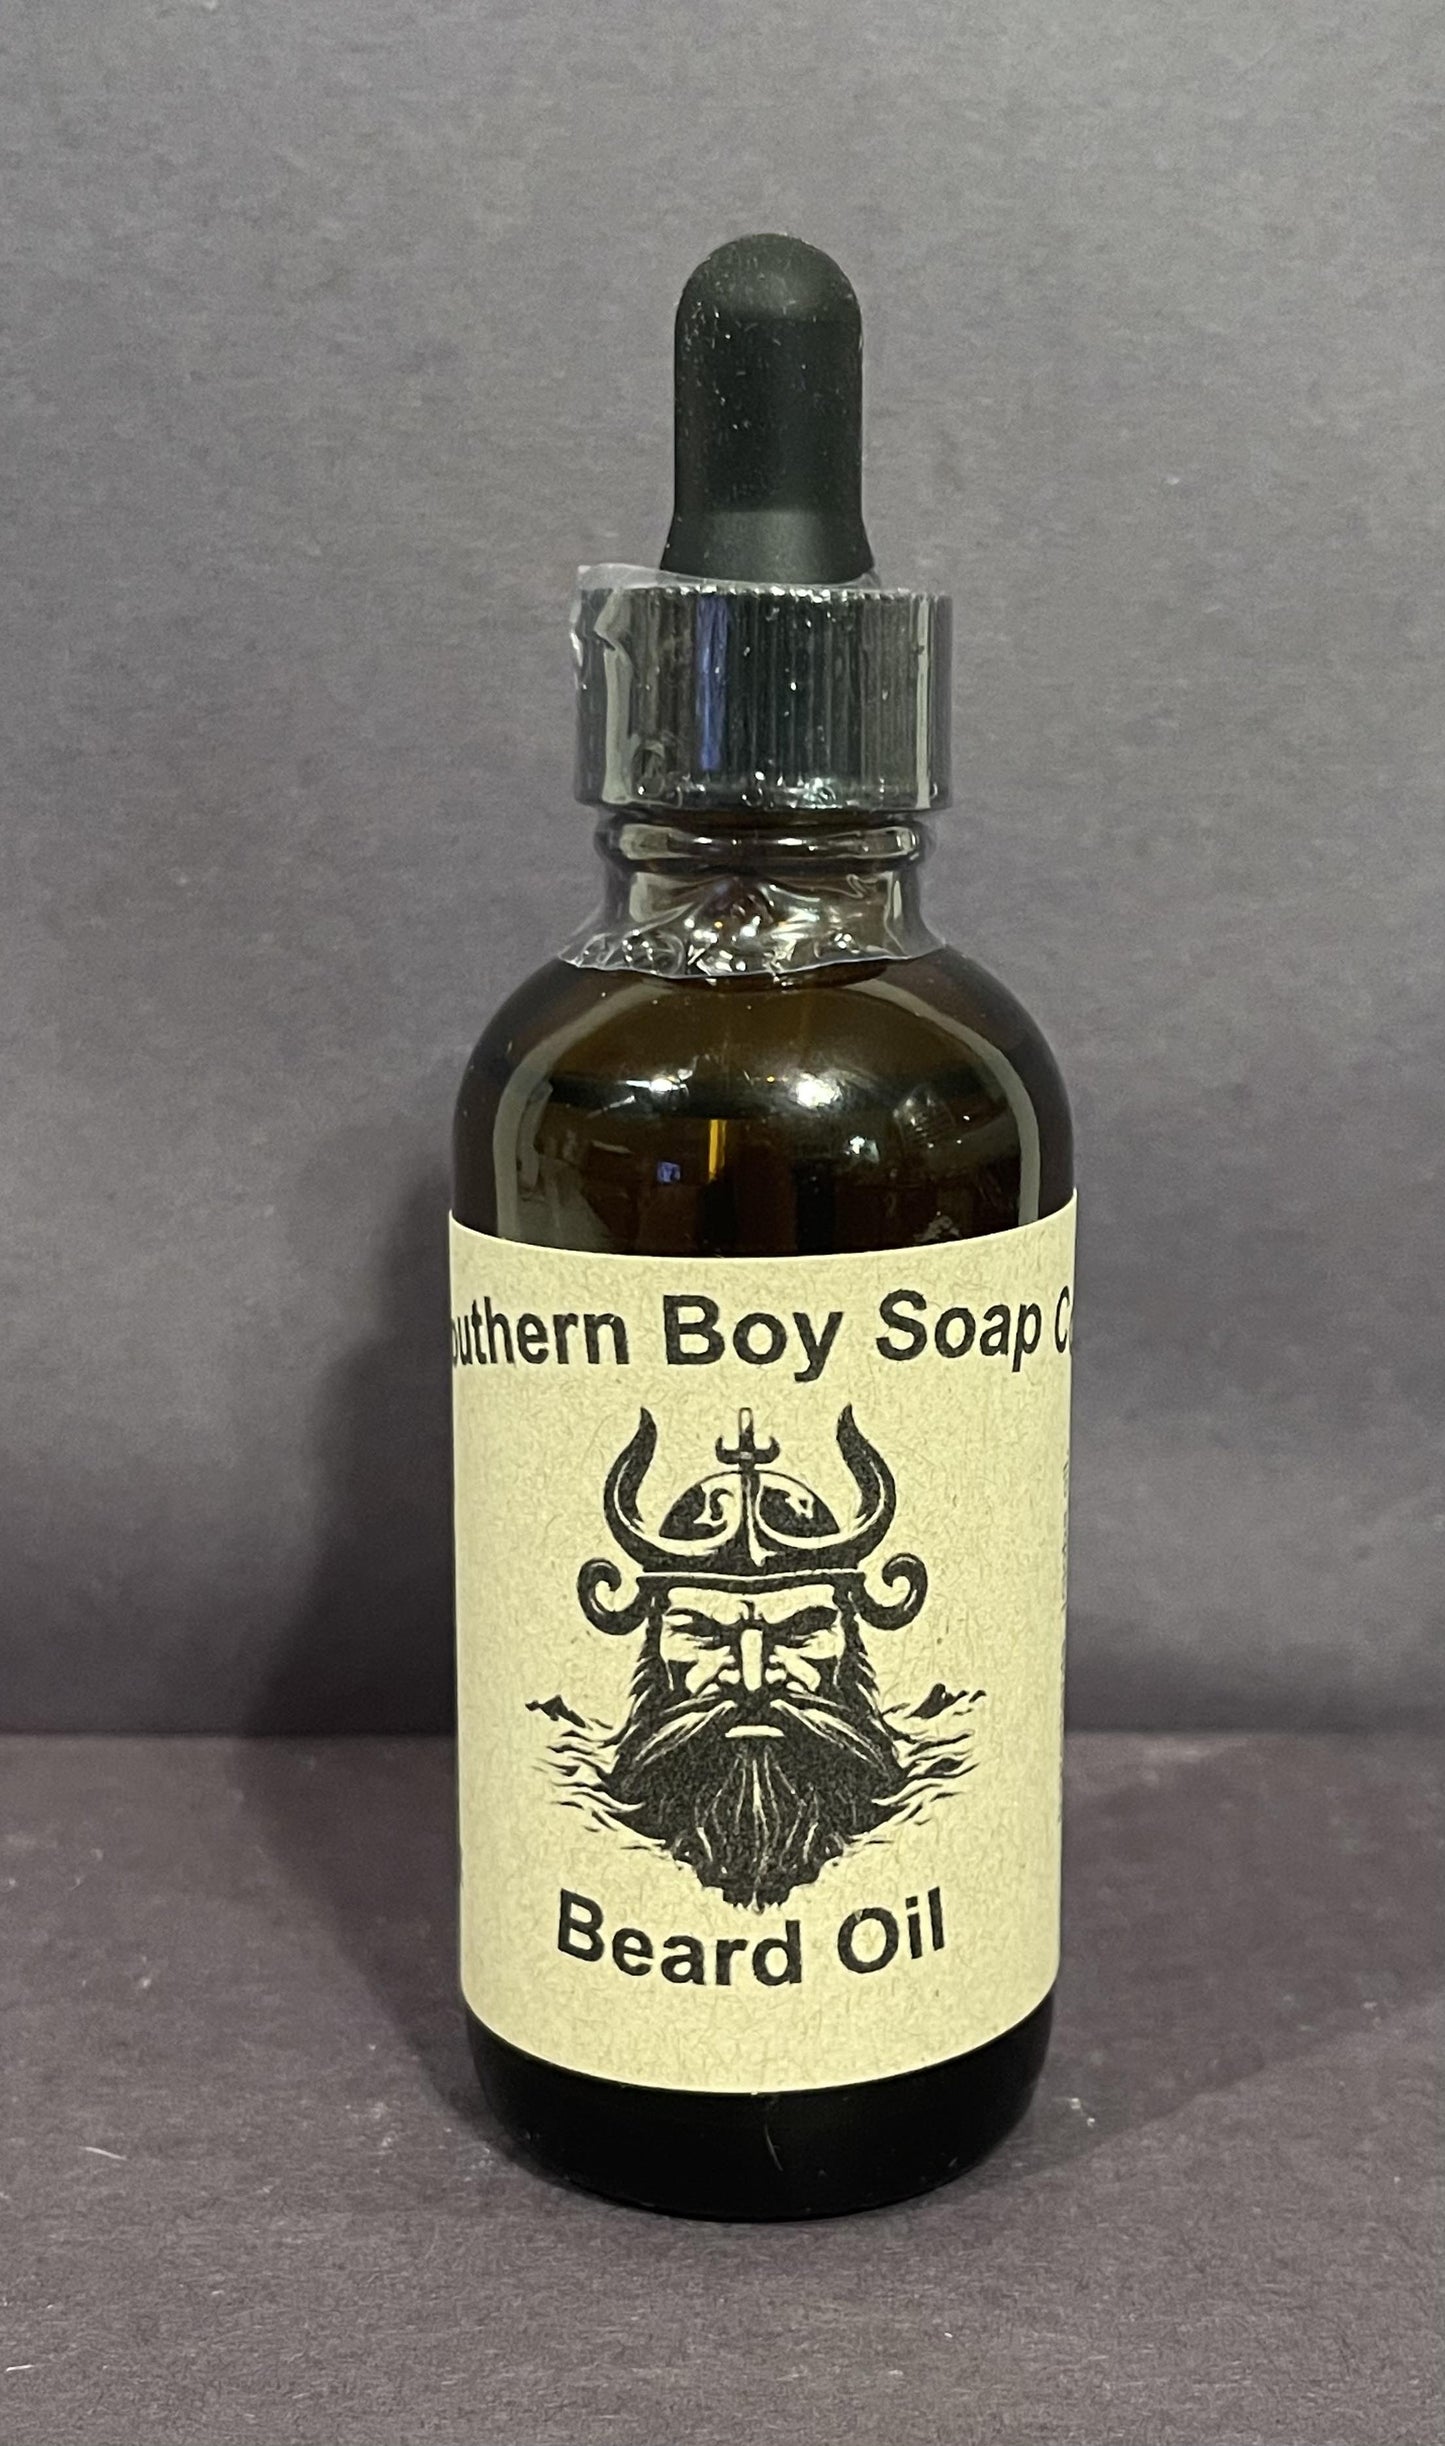 Black scented Premium Beard Oil